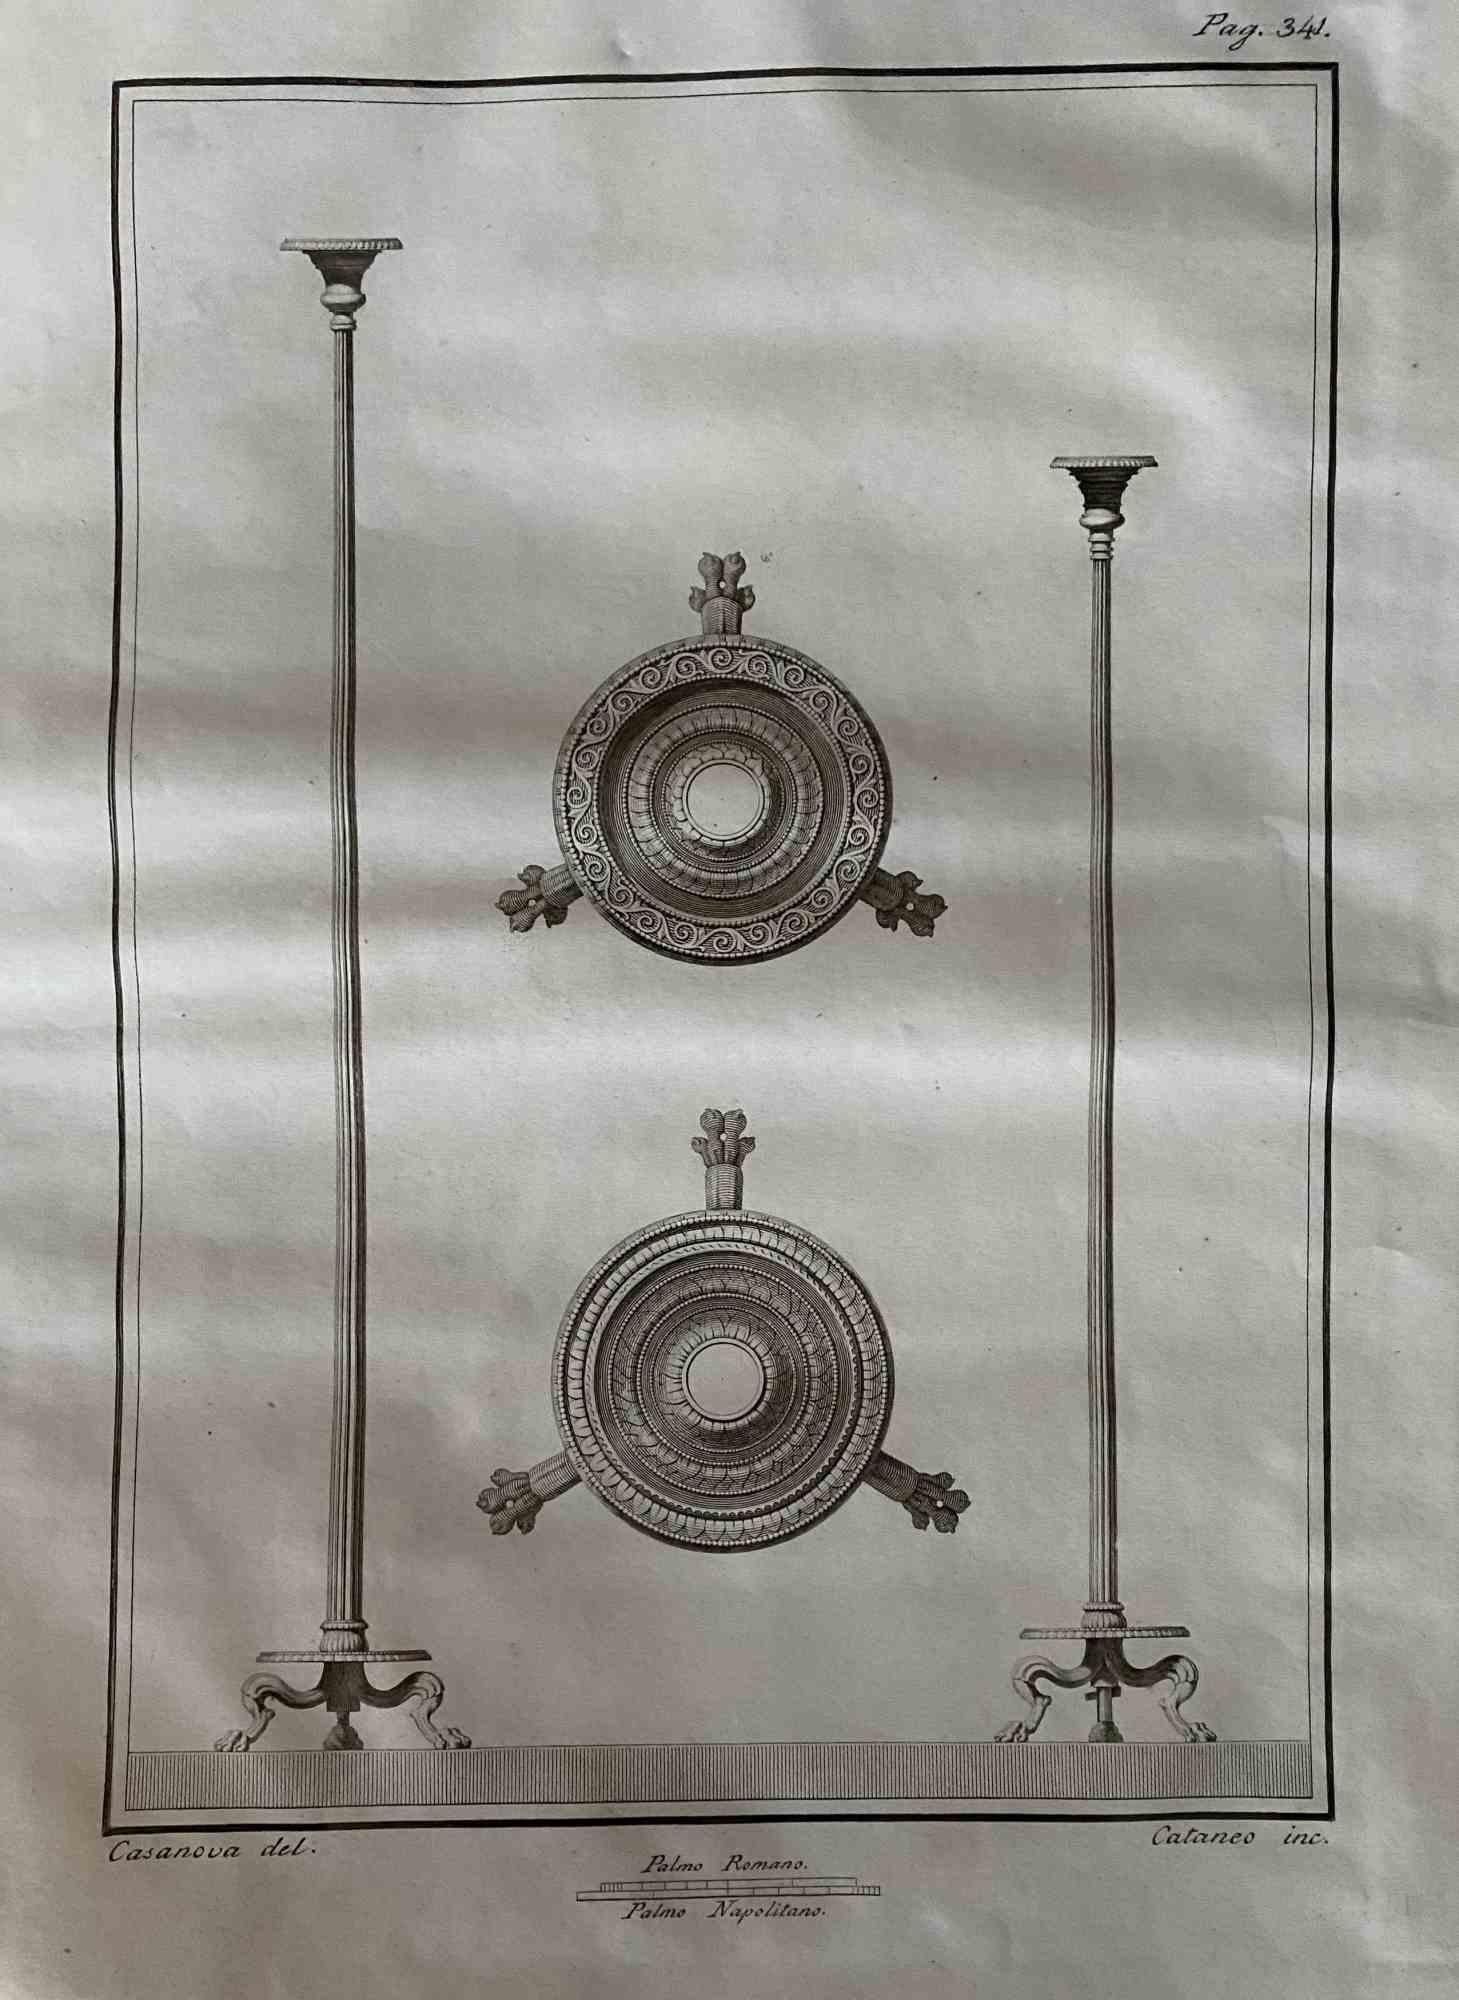 Lampe à huile est une eau-forte réalisée par Aniello Cataneo (1732-1805).

La gravure appartient à la suite d'estampes "Antiquités d'Herculanum exposées" (titre original : "Le Antichità di Ercolano Esposte"), un volume de huit gravures des